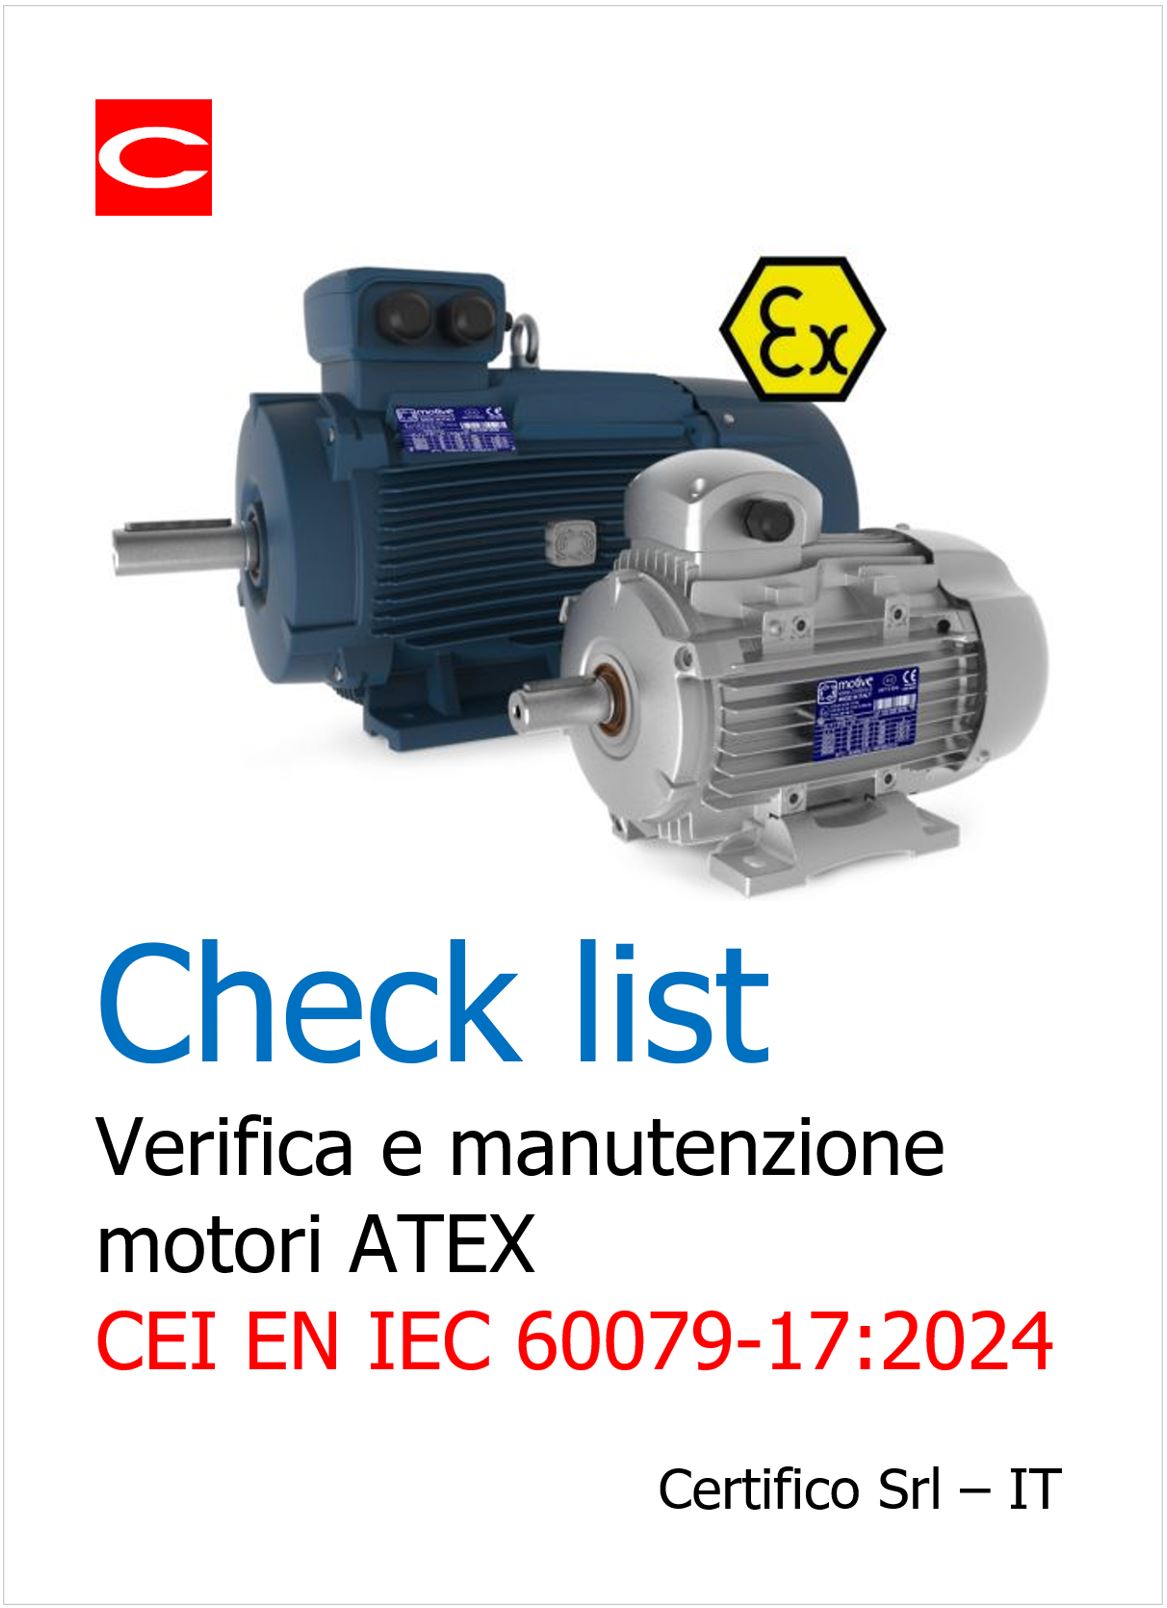 EN IEC 60079 17 Manutenzione motori